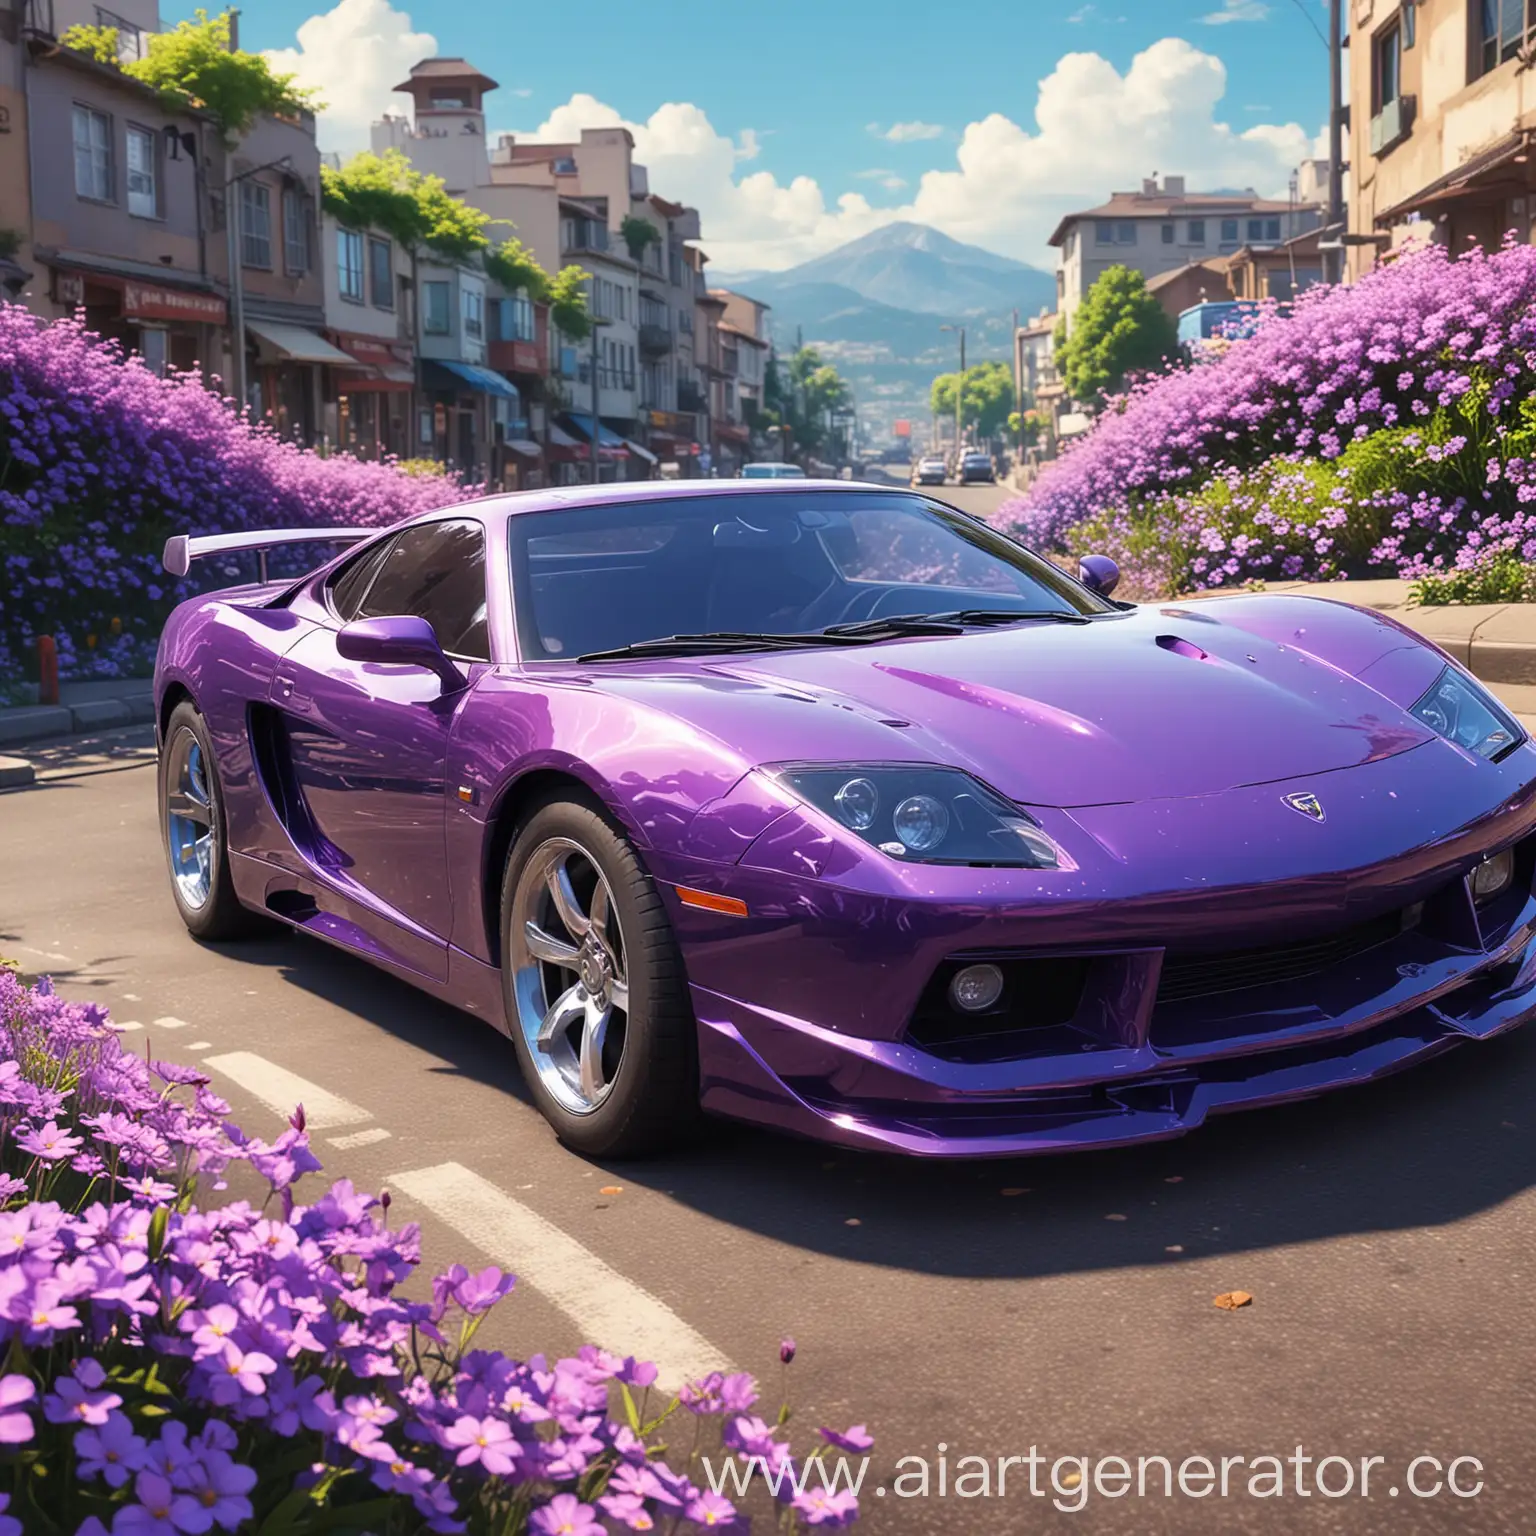 Anime-Cars-Amongst-Vibrant-Purple-Flowers